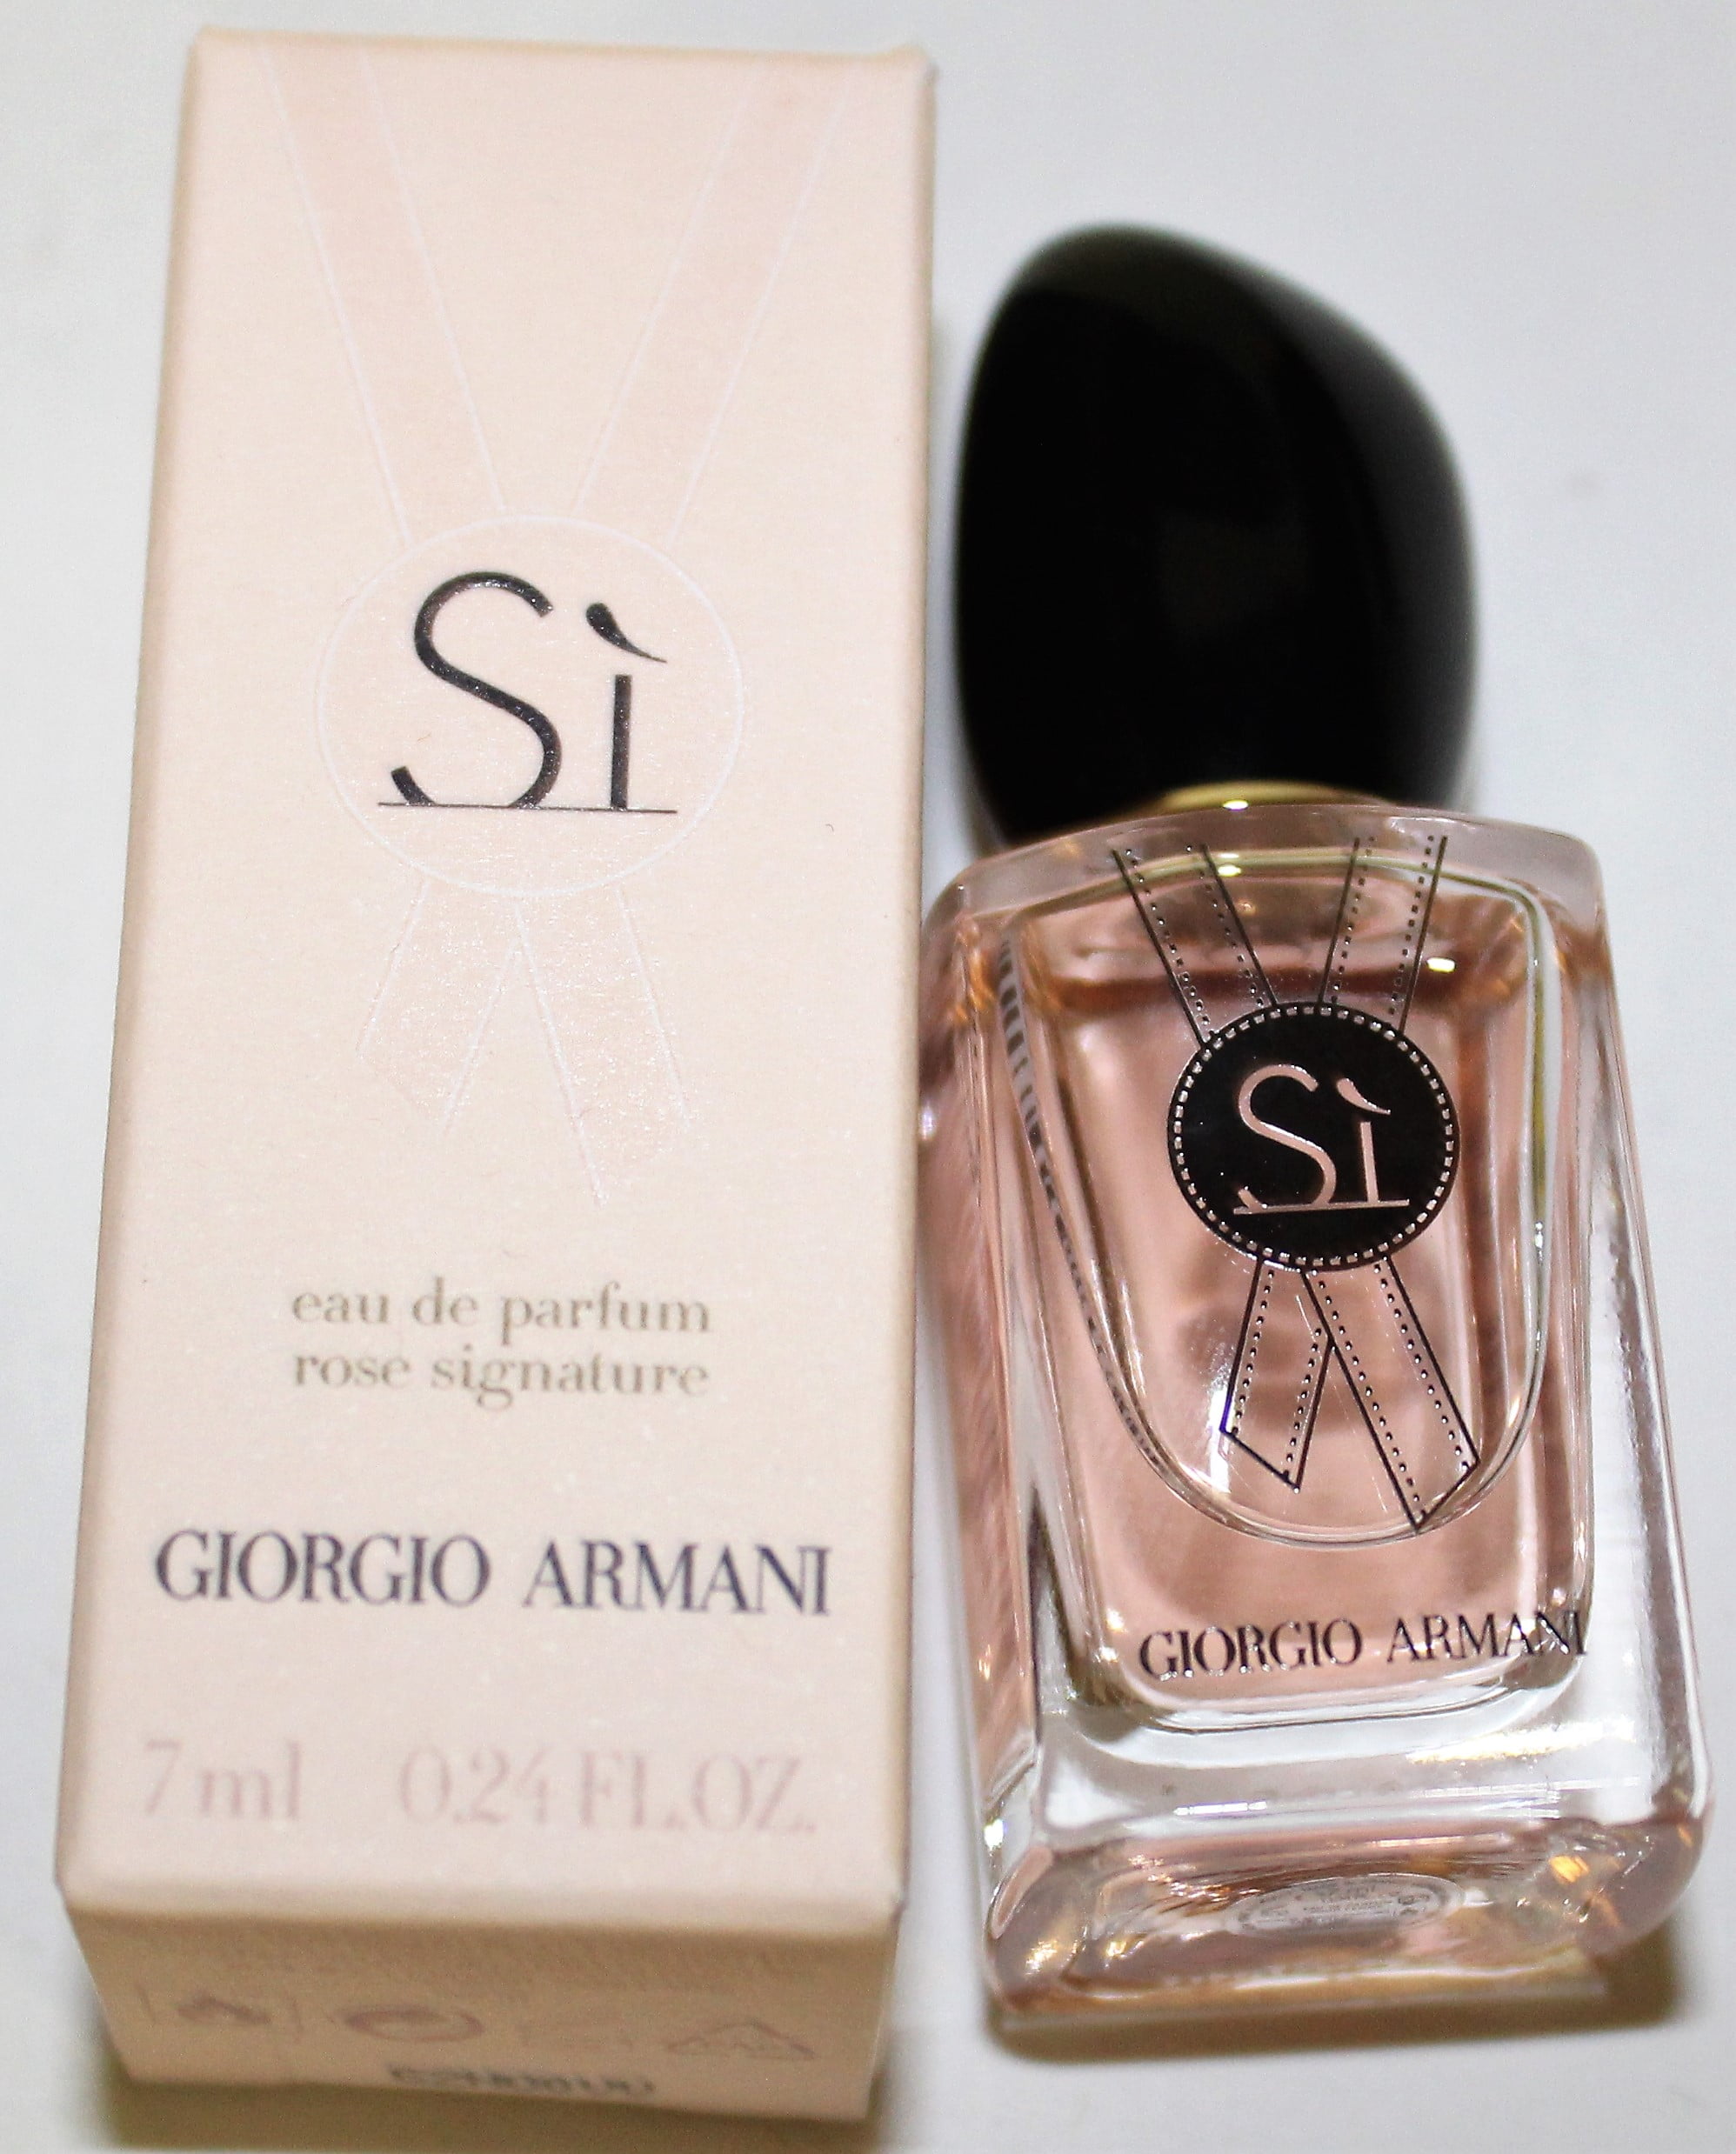 giorgio armani si rose signature eau de parfum